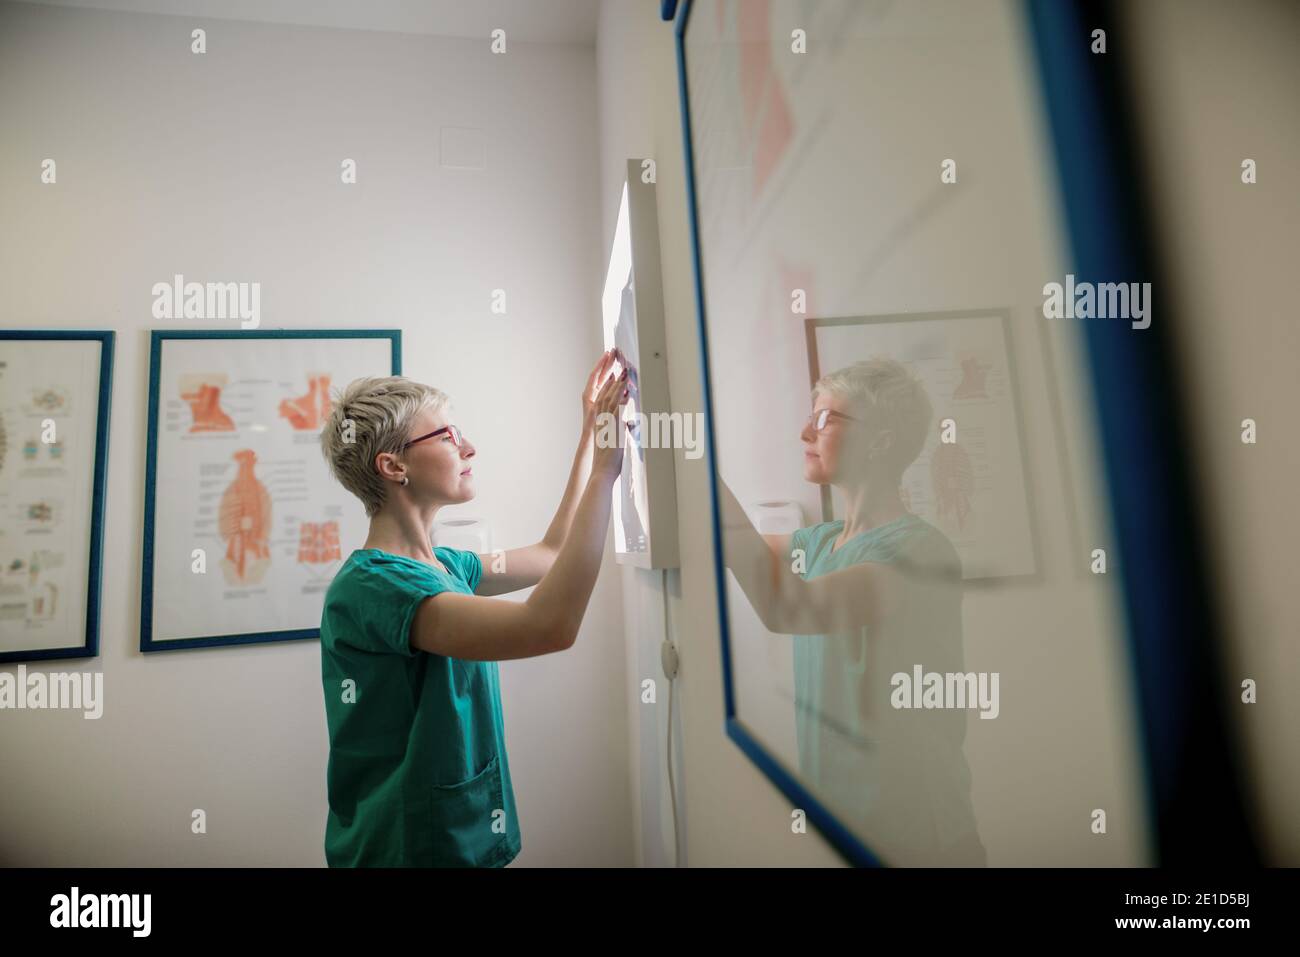 Doctor scrutinize x-ray of patient’s broken bones. Stock Photo